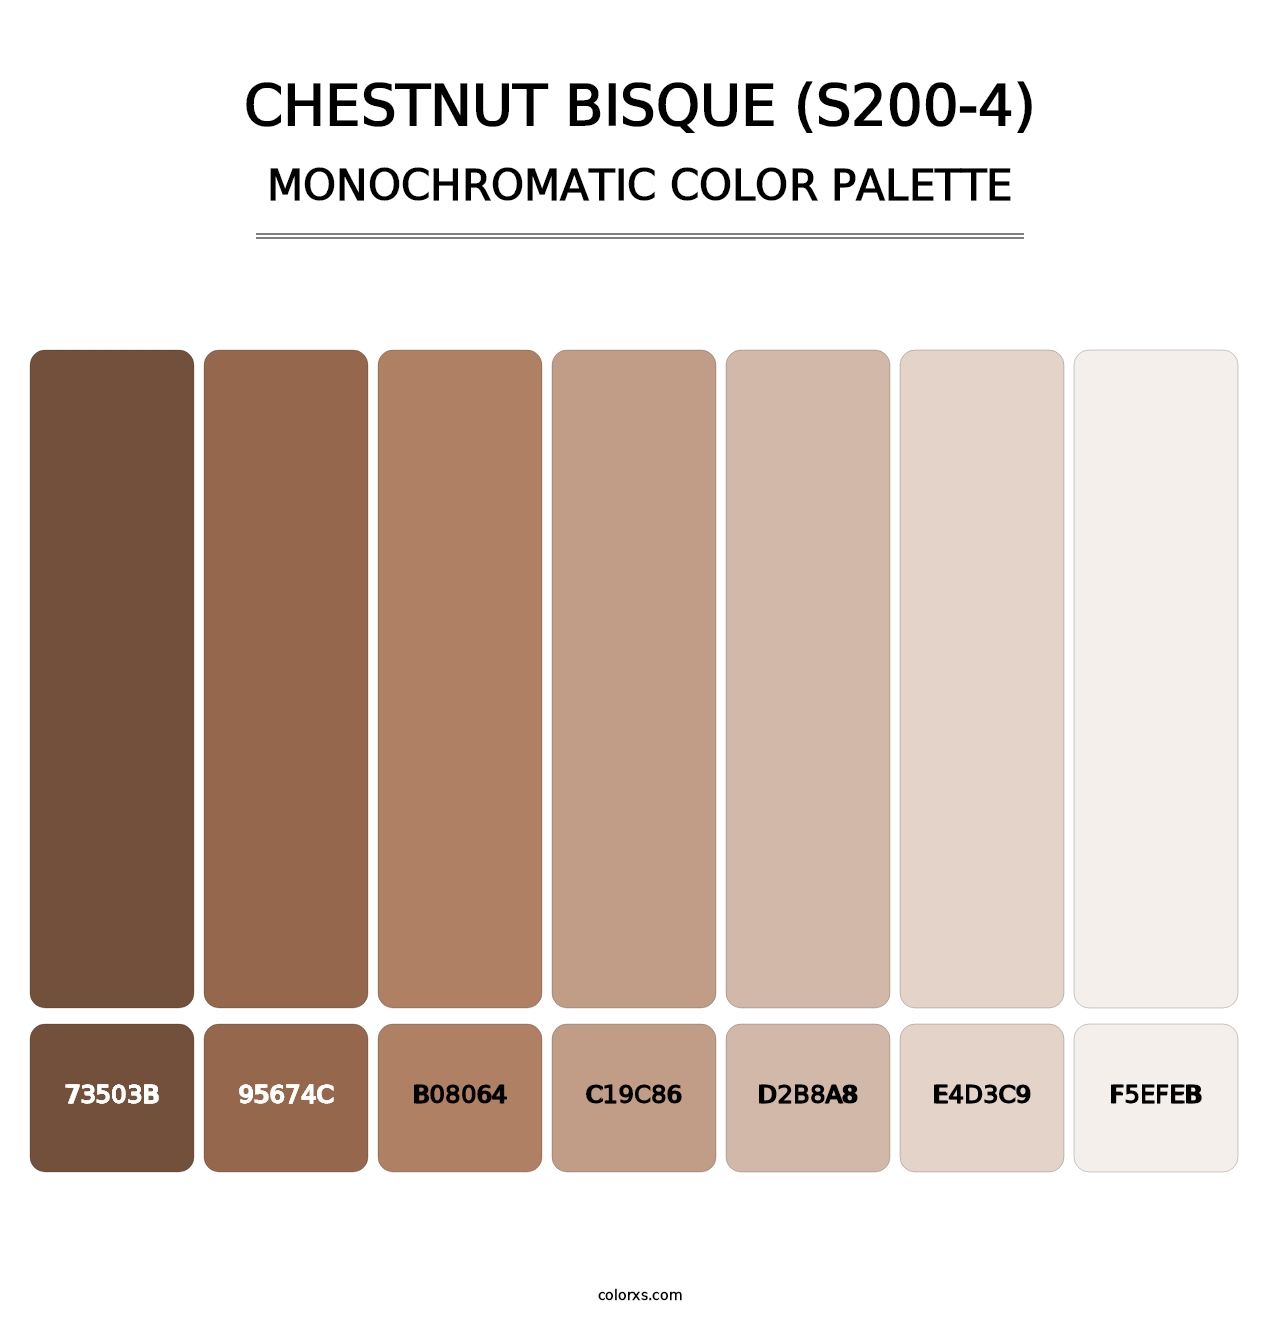 Chestnut Bisque (S200-4) - Monochromatic Color Palette